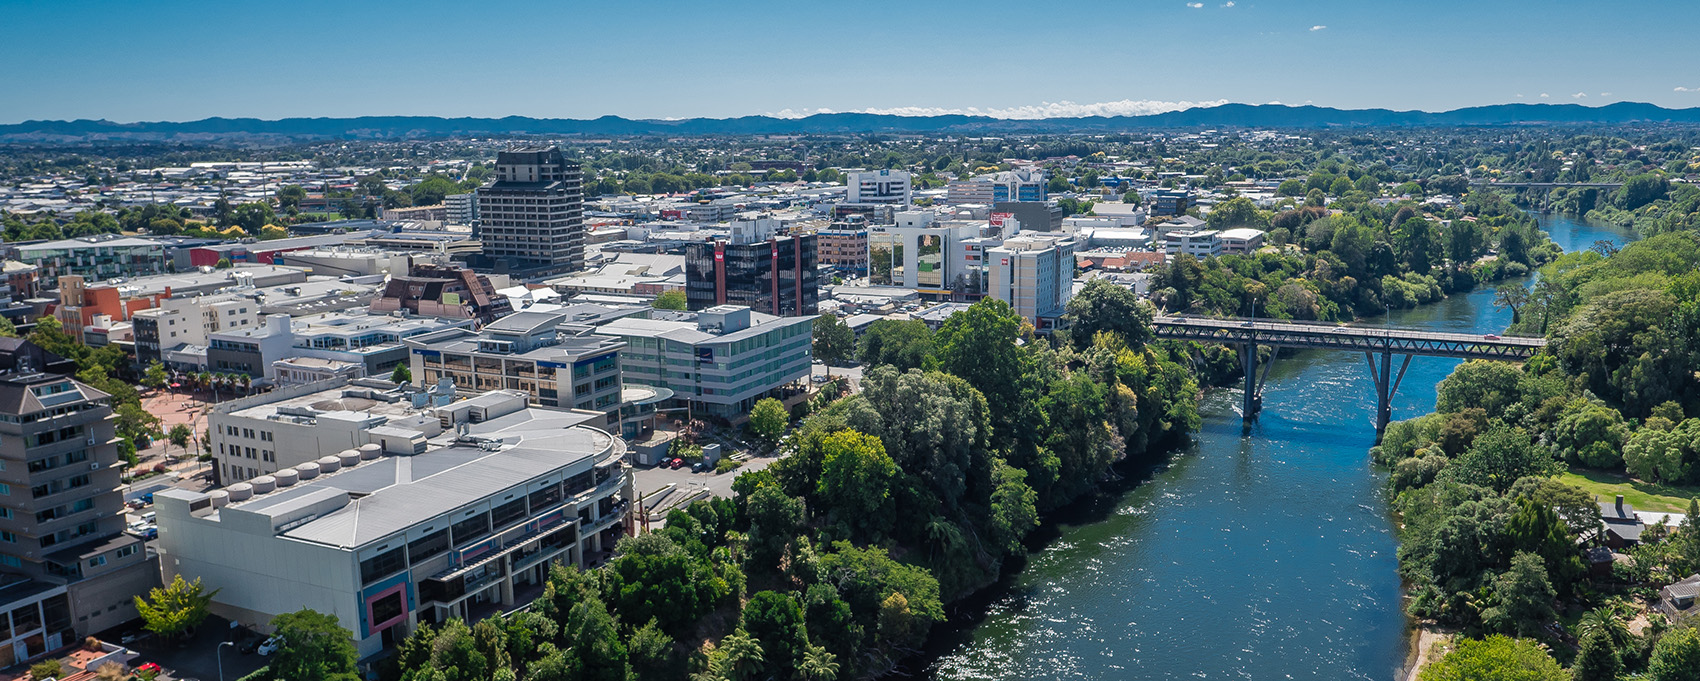 Image - Hamilton City and Waikato River